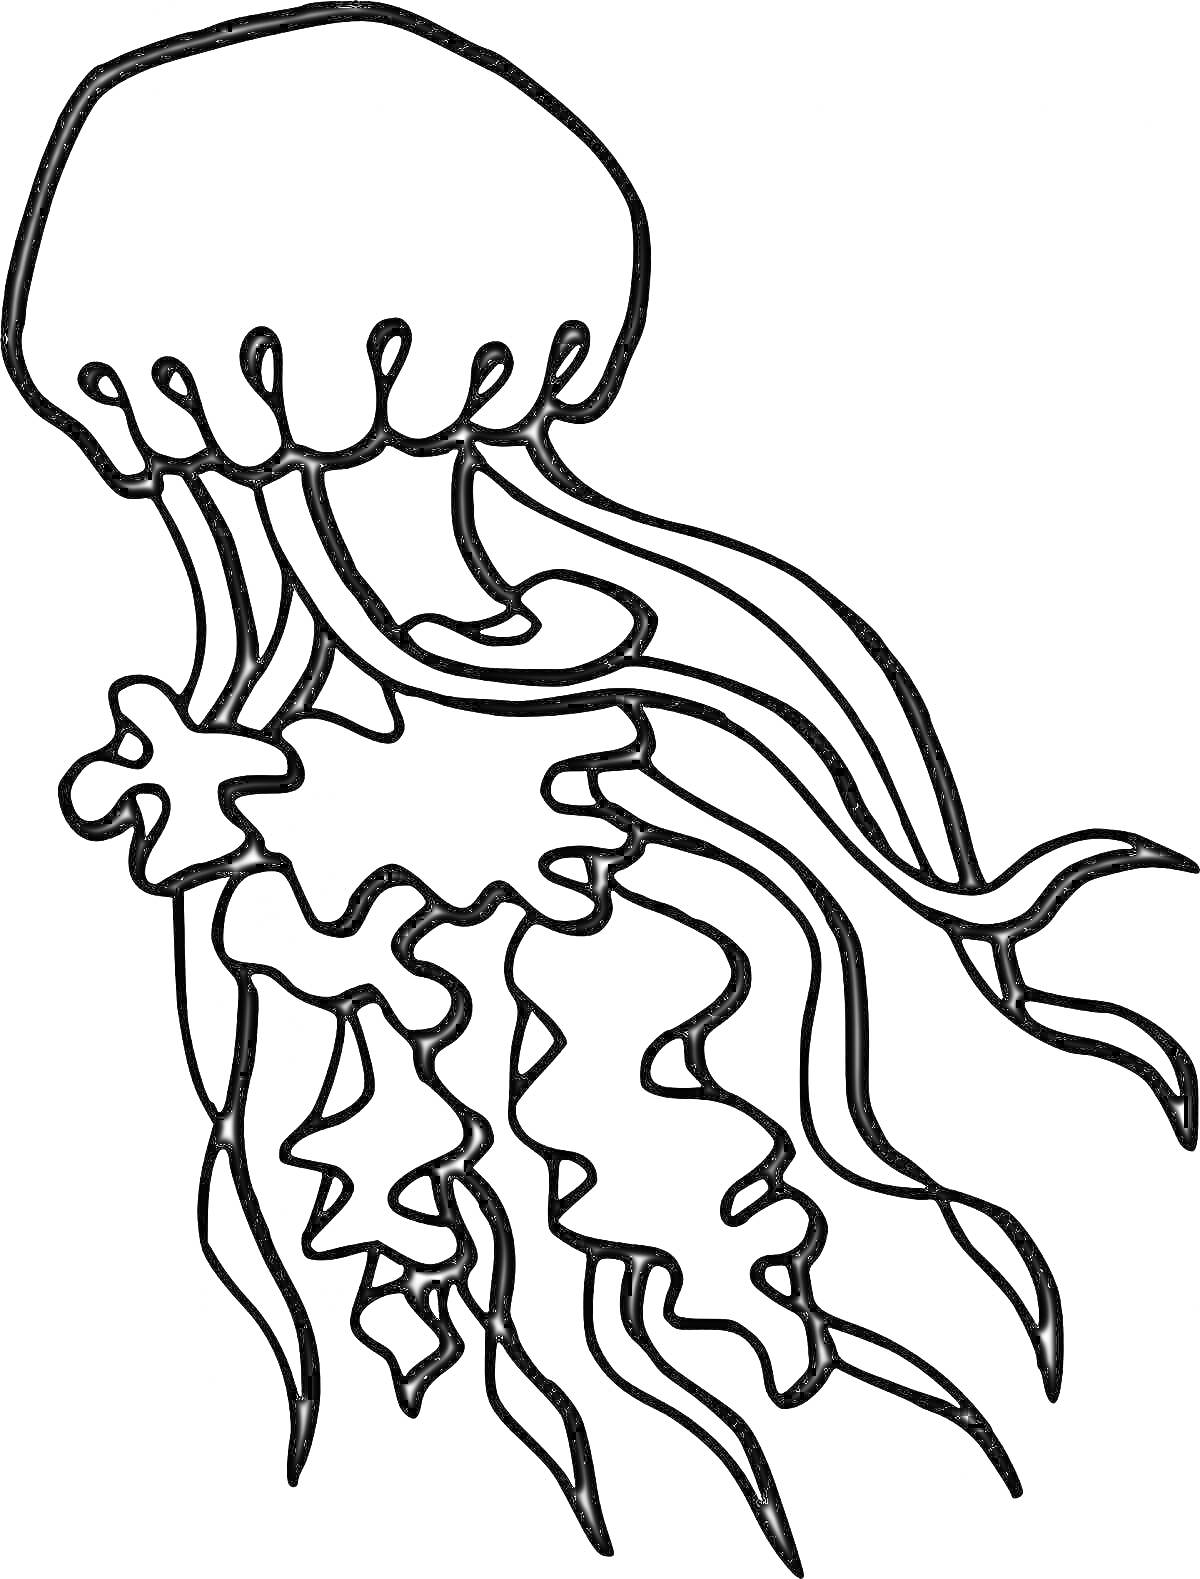 Раскраска Медуза с щупальцами для раскрашивания детьми